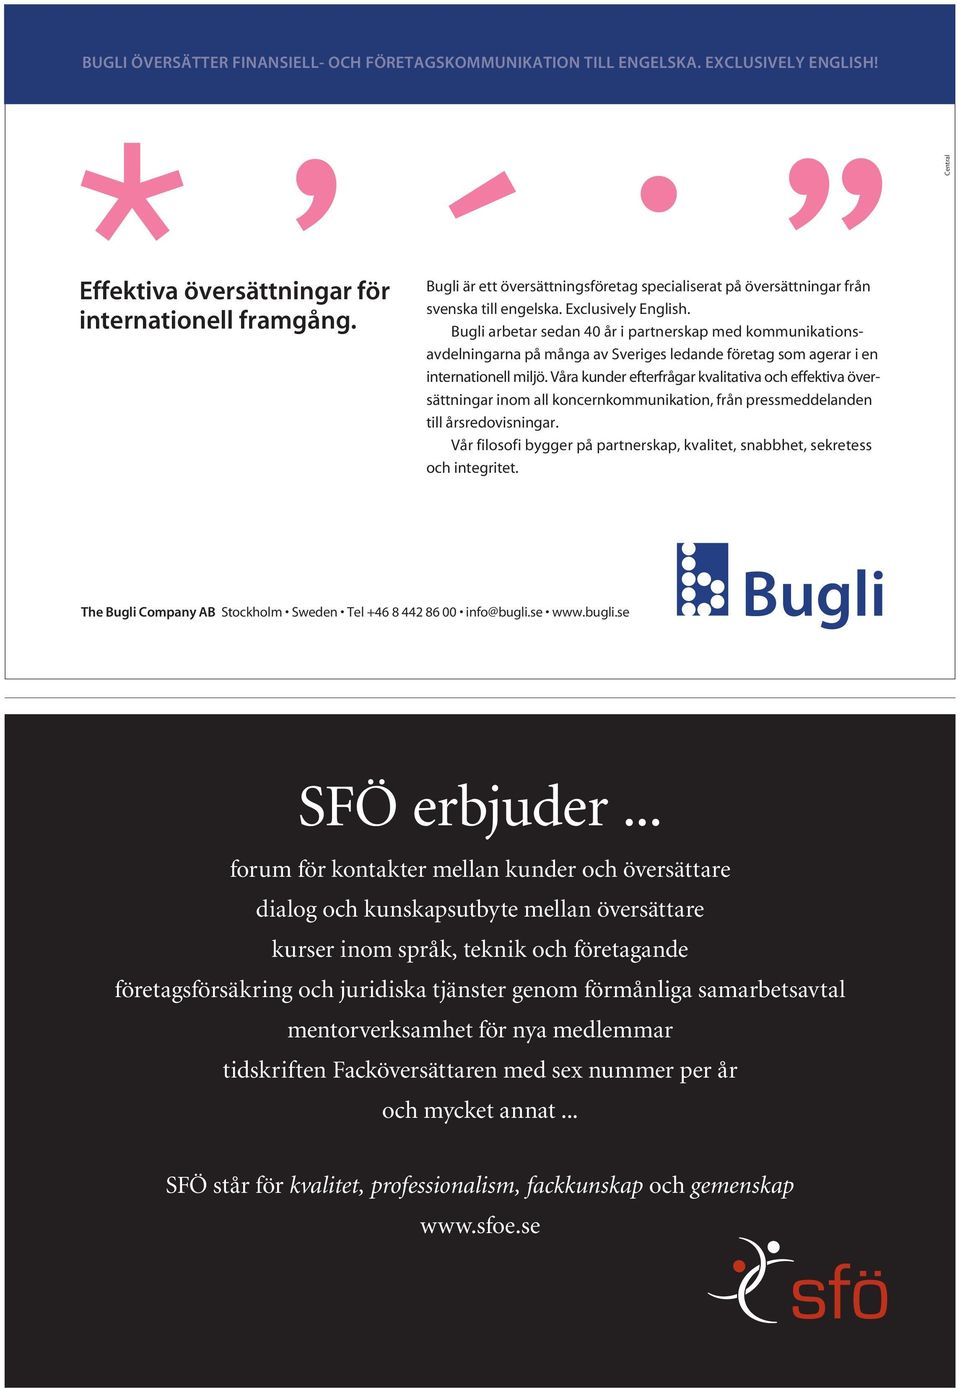 Bugli arbetar sedan 40 år i partnerskap med kommunikationsavdelningarna på många av Sveriges ledande företag som agerar i en internationell miljö.